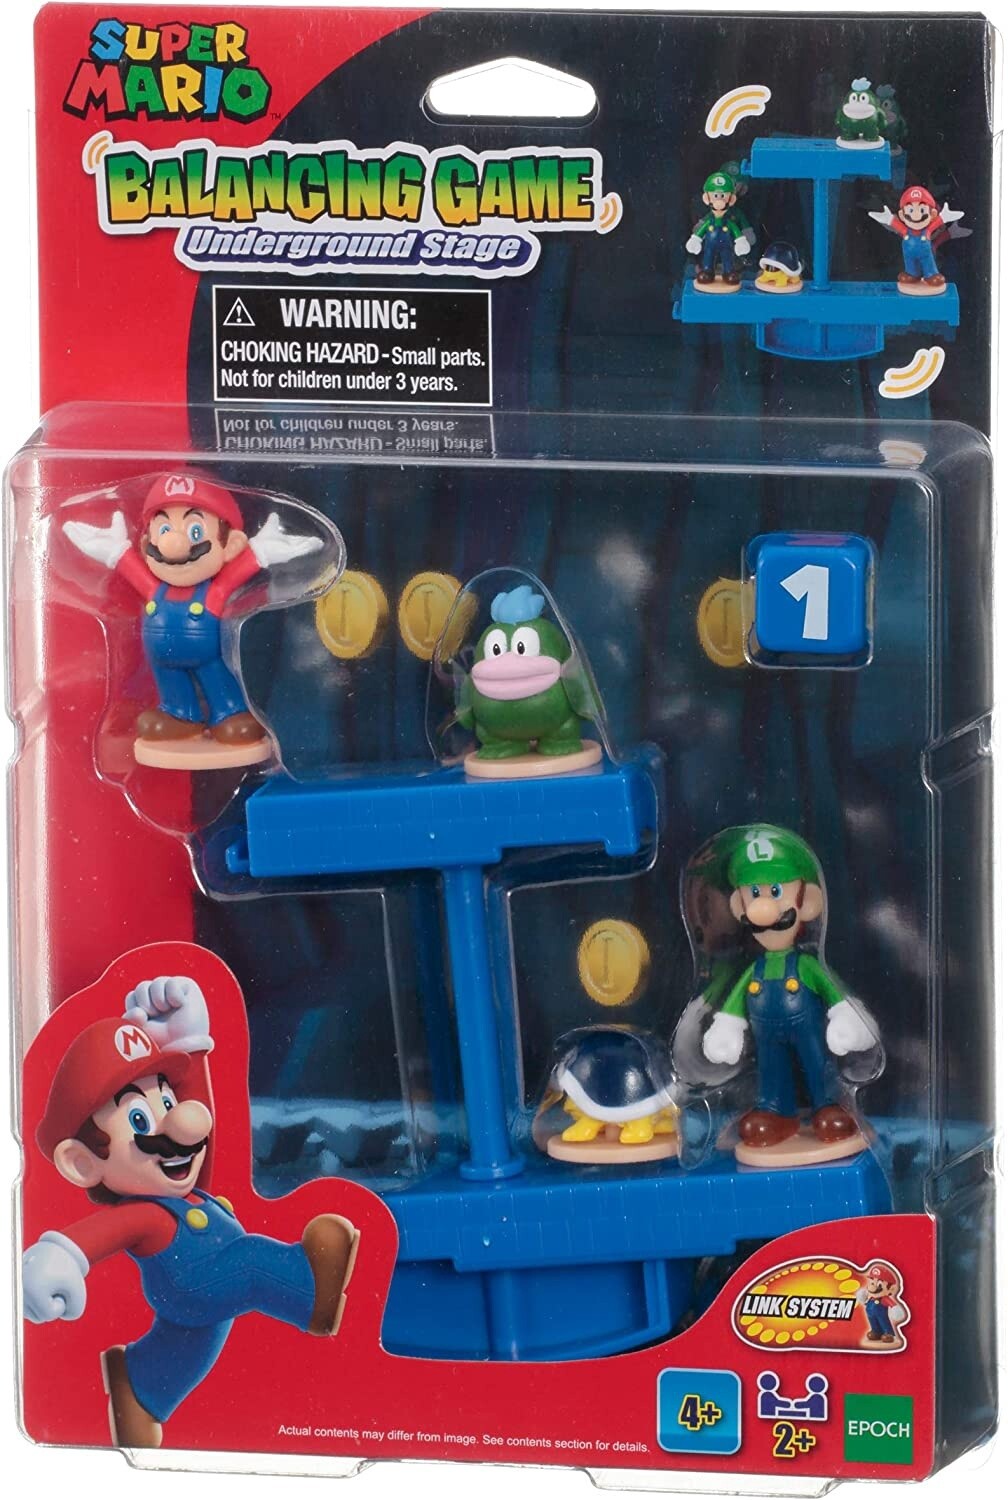 Super Mario Balancing Game (Underground Stage)